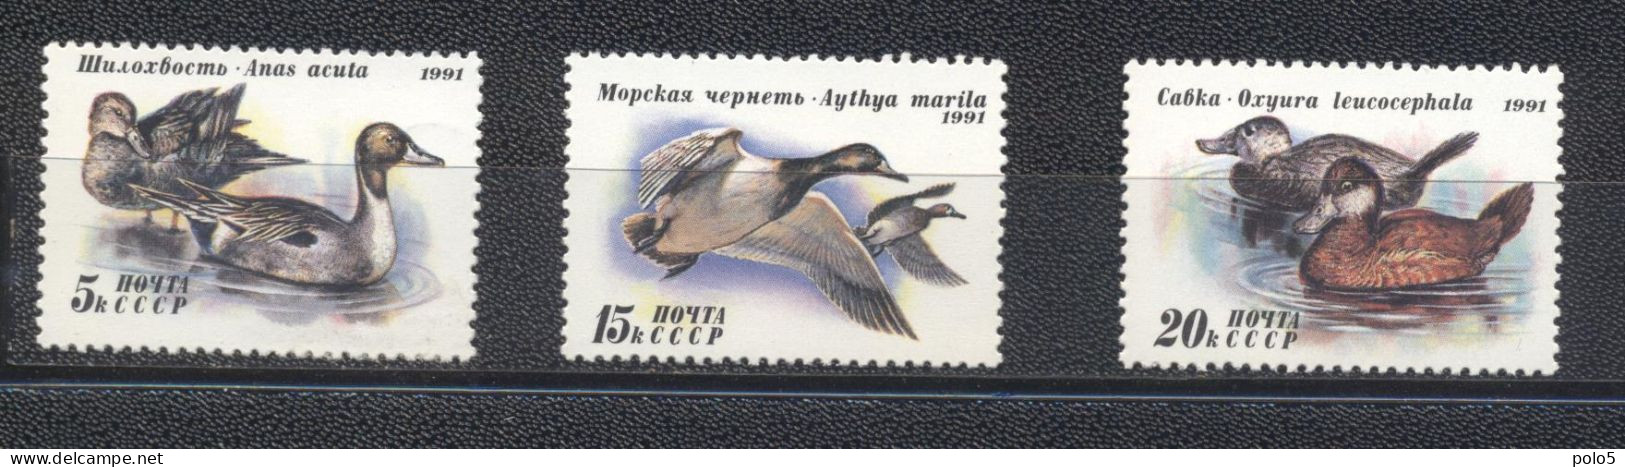 URSS 1991-Ducks  Set (3v) - Ungebraucht